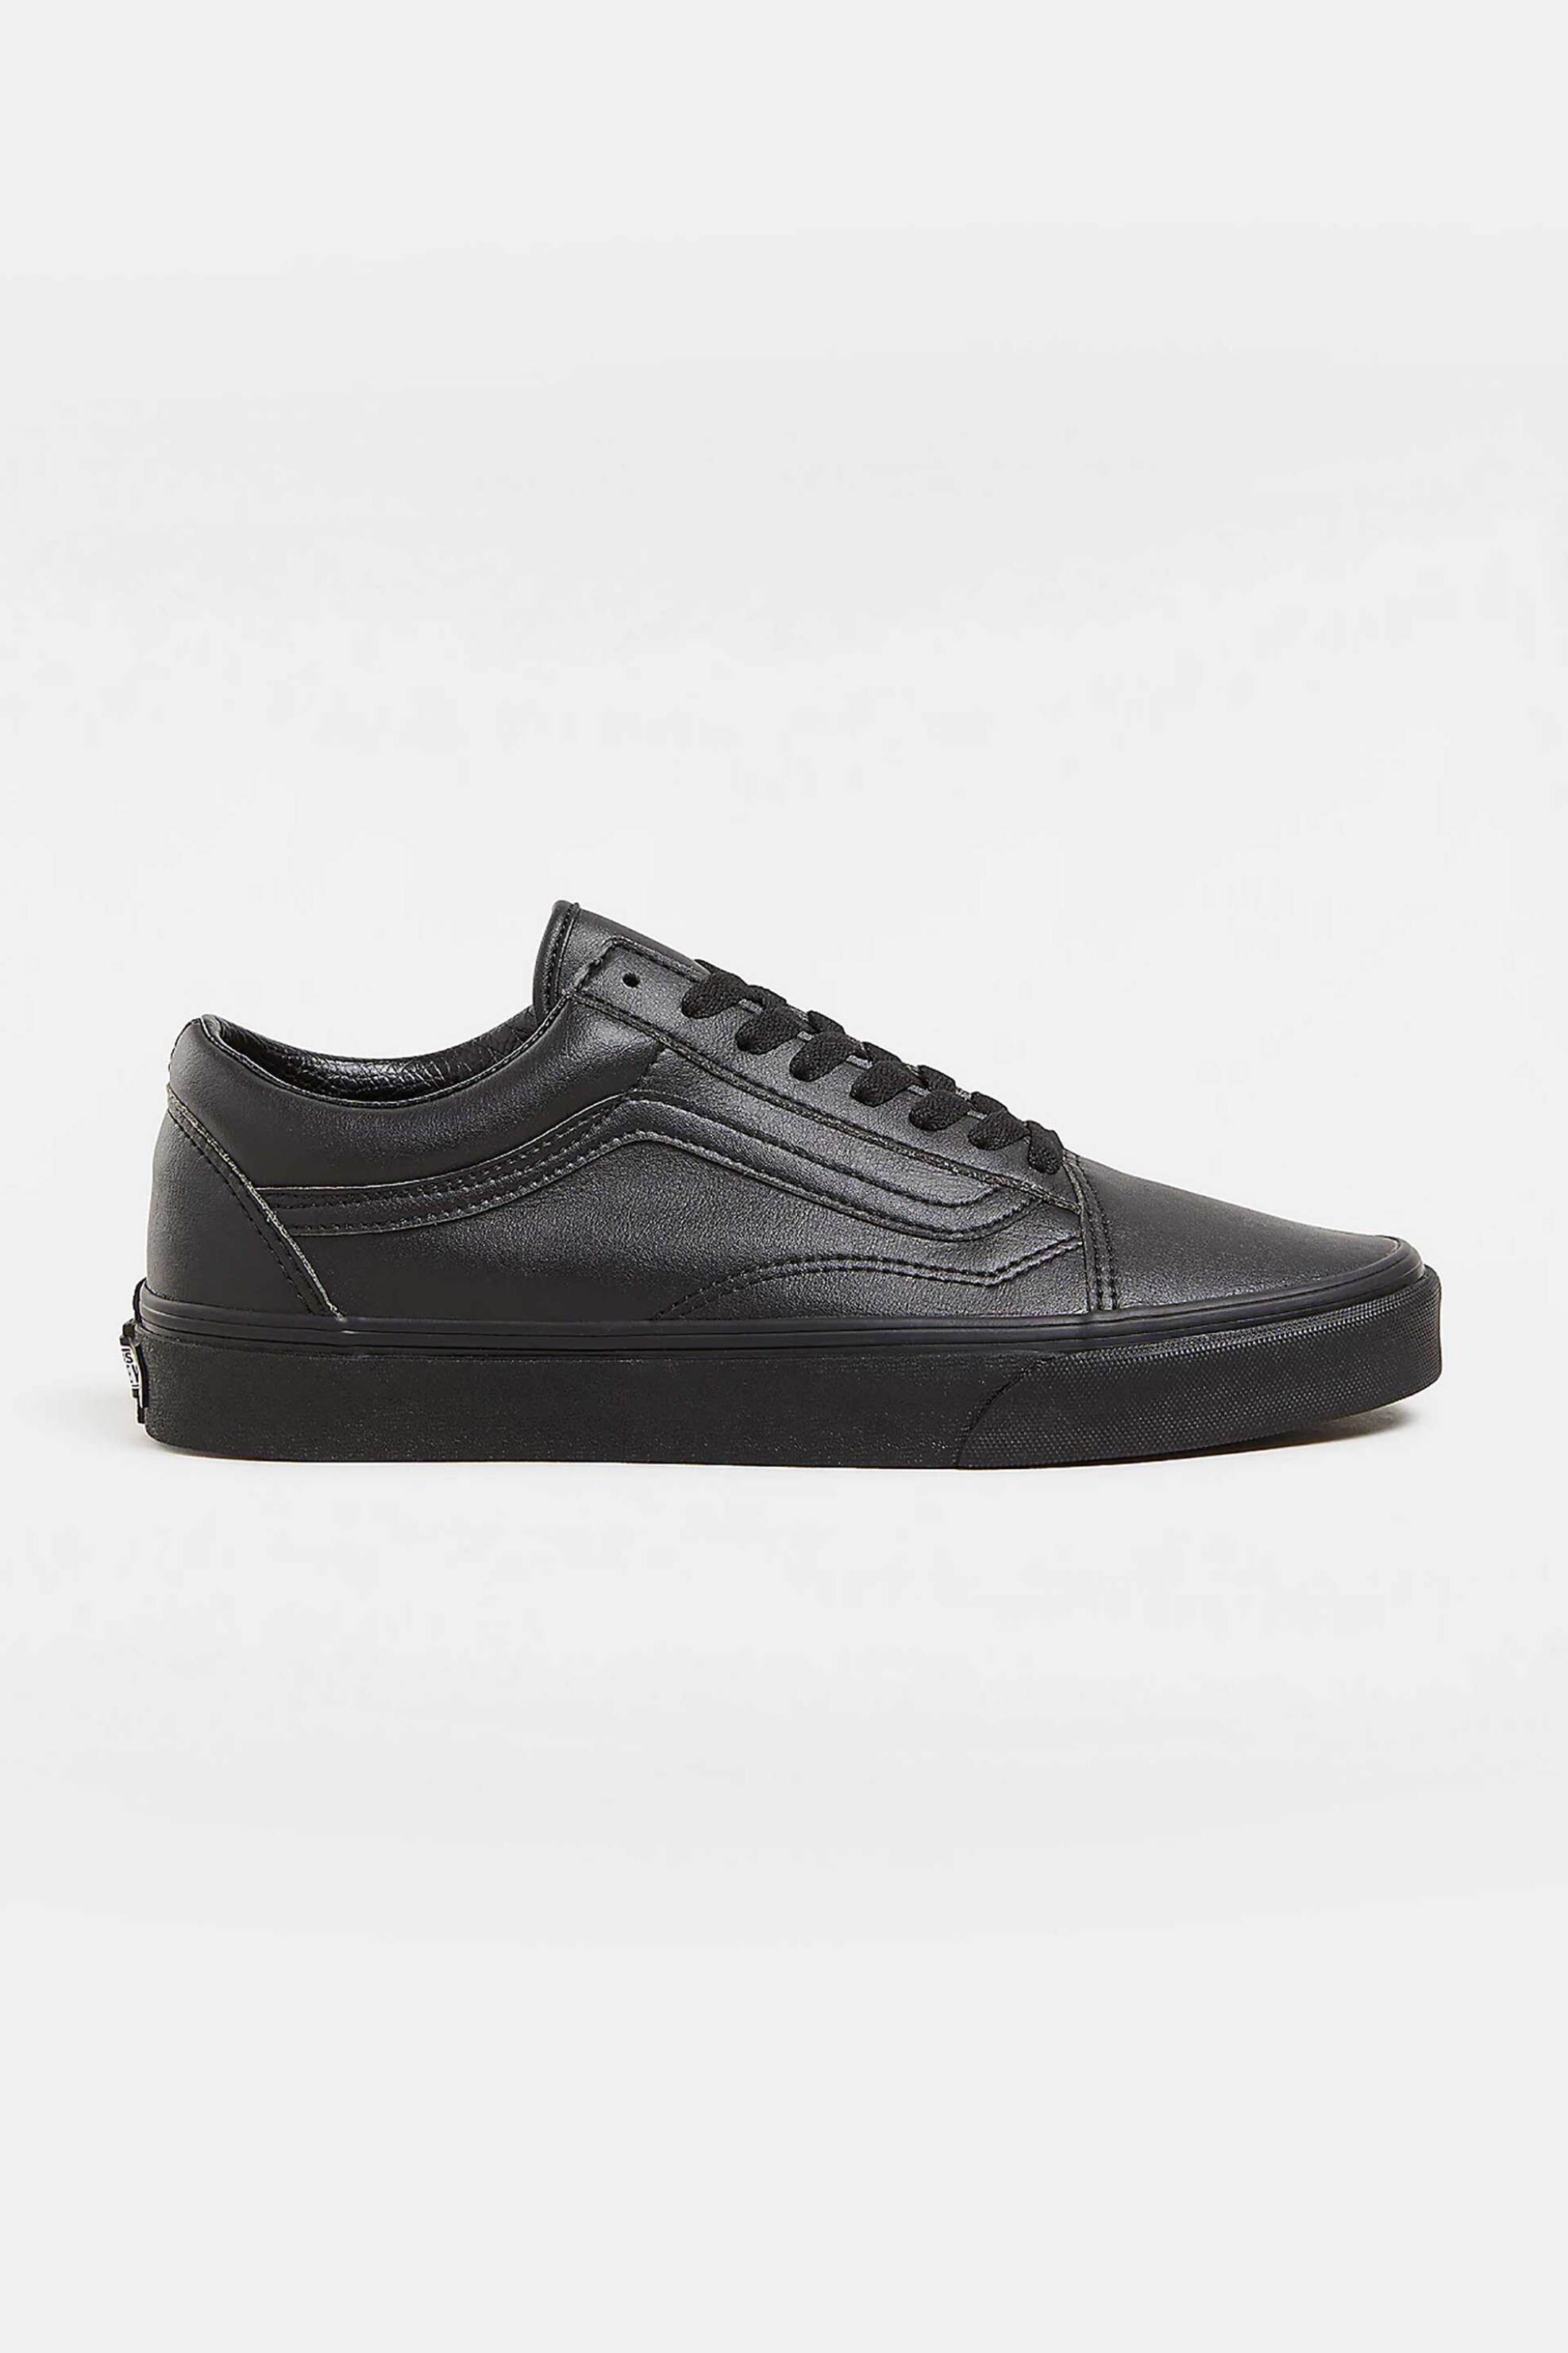 Ανδρική Μόδα > Ανδρικά Παπούτσια > Ανδρικά Sneakers Vans unisex δερμάτινα sneakers μονόχρωμα με trademark tone-on-tone ρίγα στο πλάι "Old Skool Classic Tumble" - VN0A38G1PXP1 Μαύρο